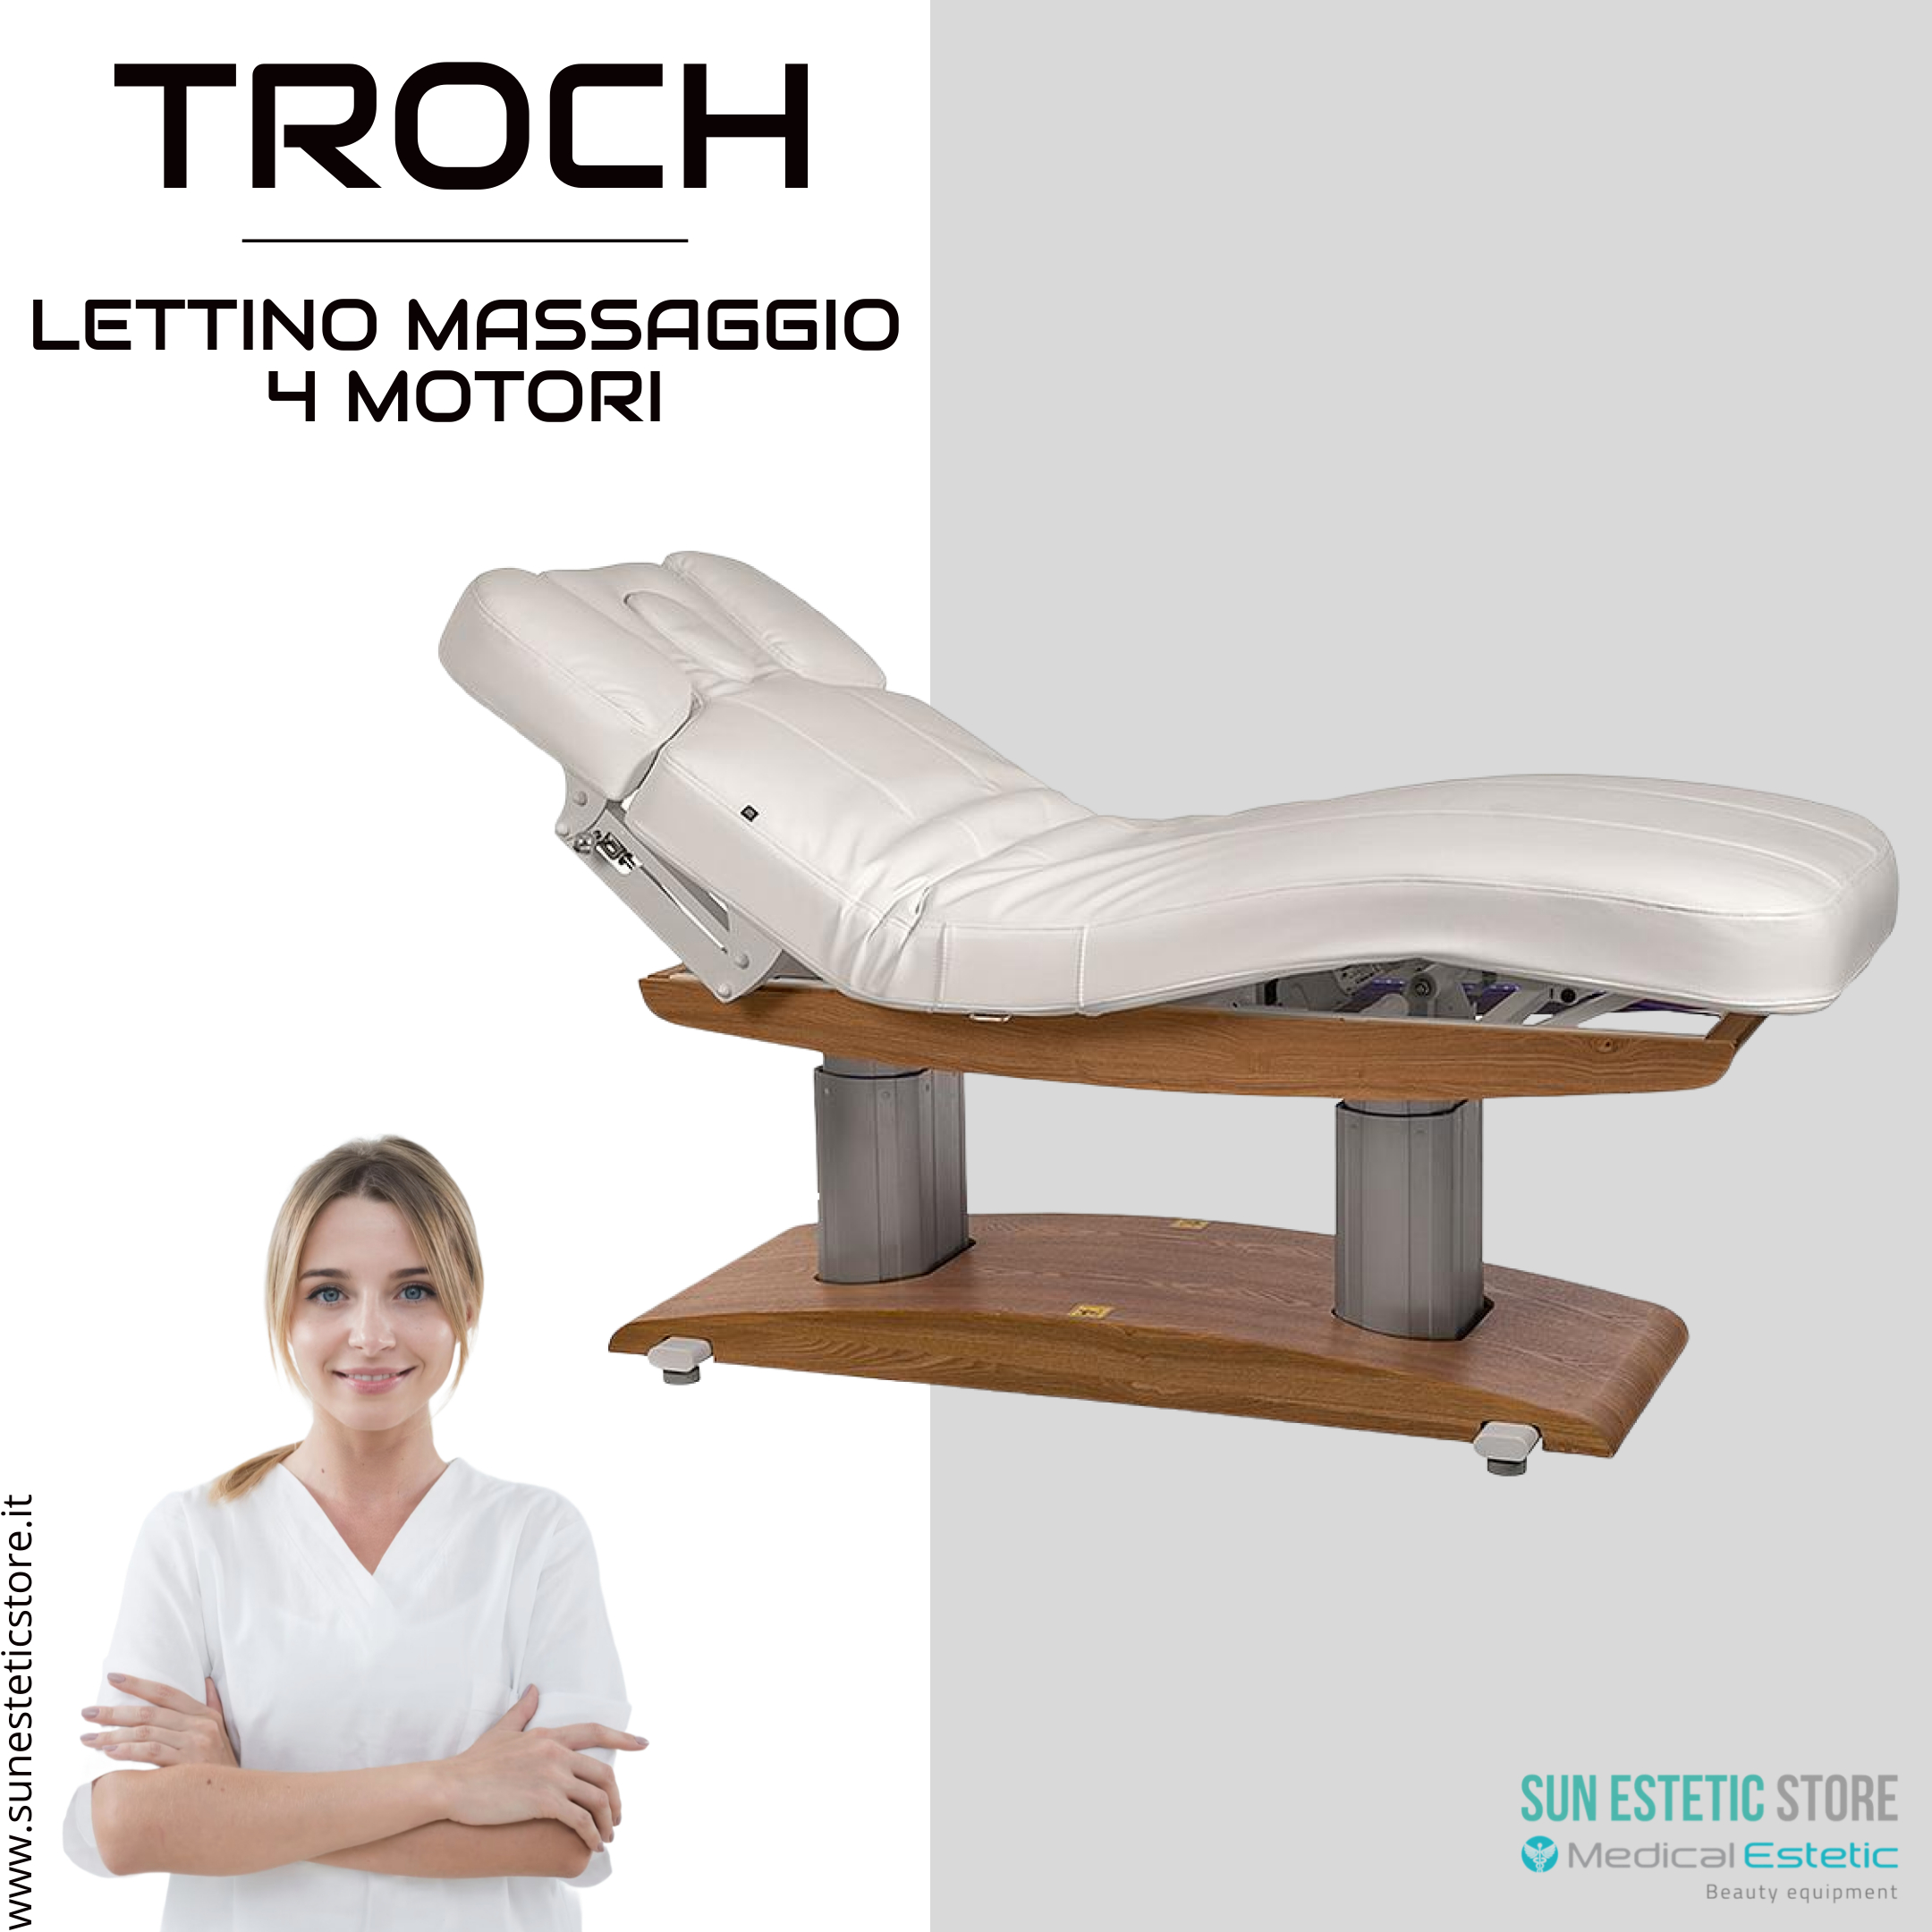 Troch lettino massaggio Spa 4 motori wellness estetica spa